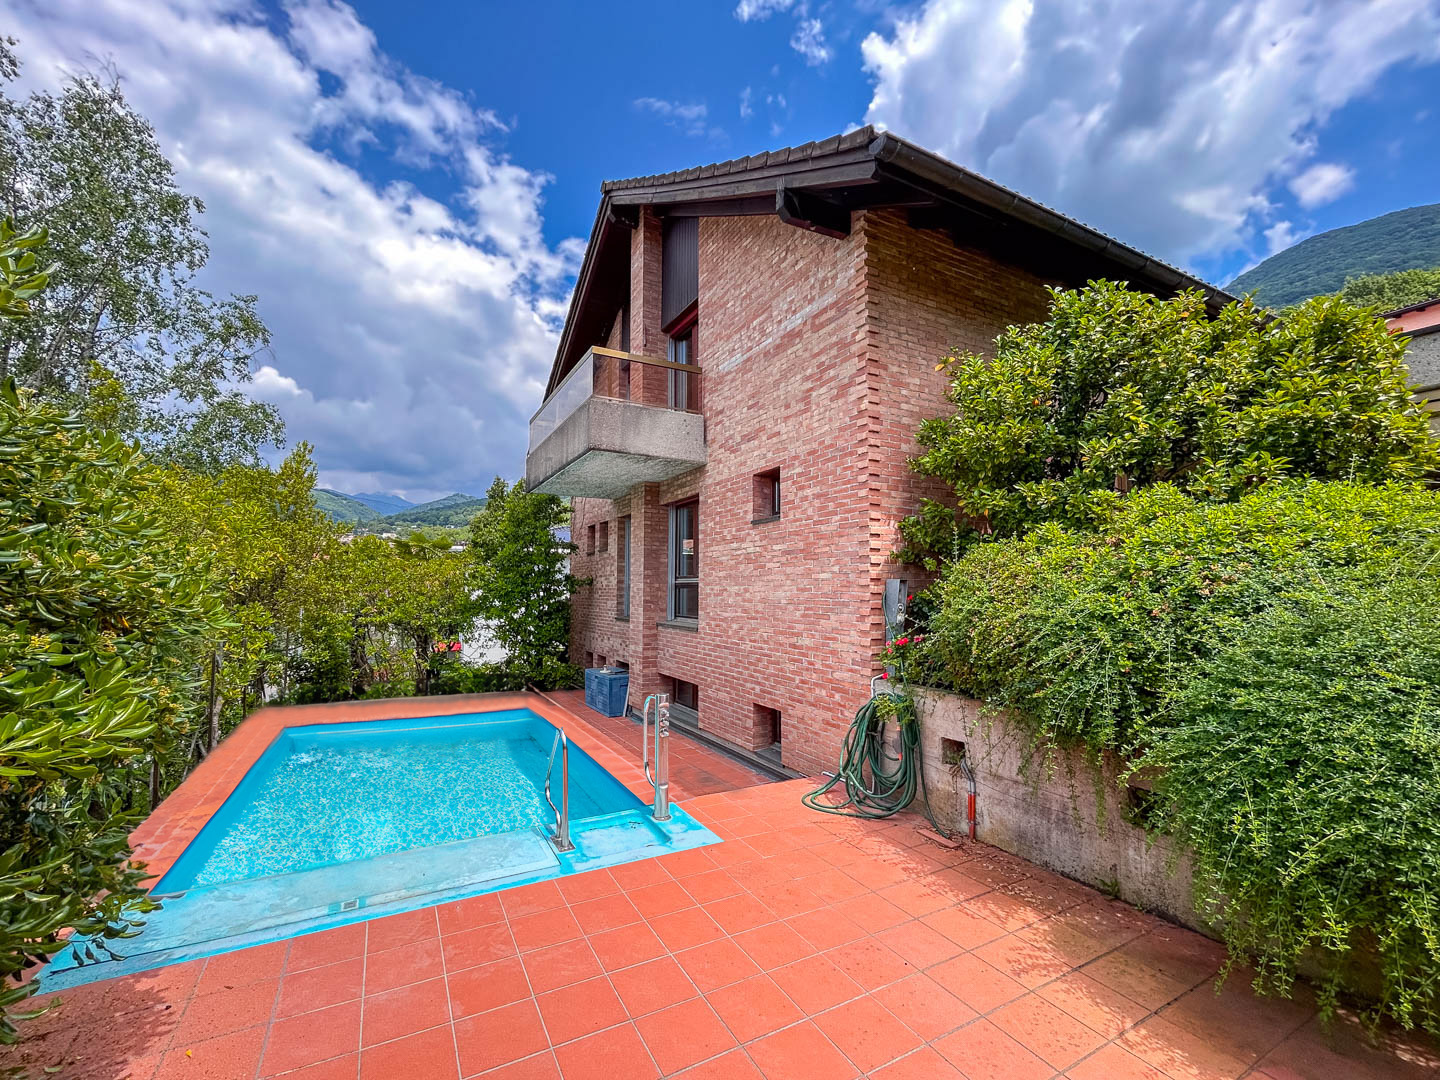 Grande villa con piscina in vendita a Lugano nel quartiere di Cadro